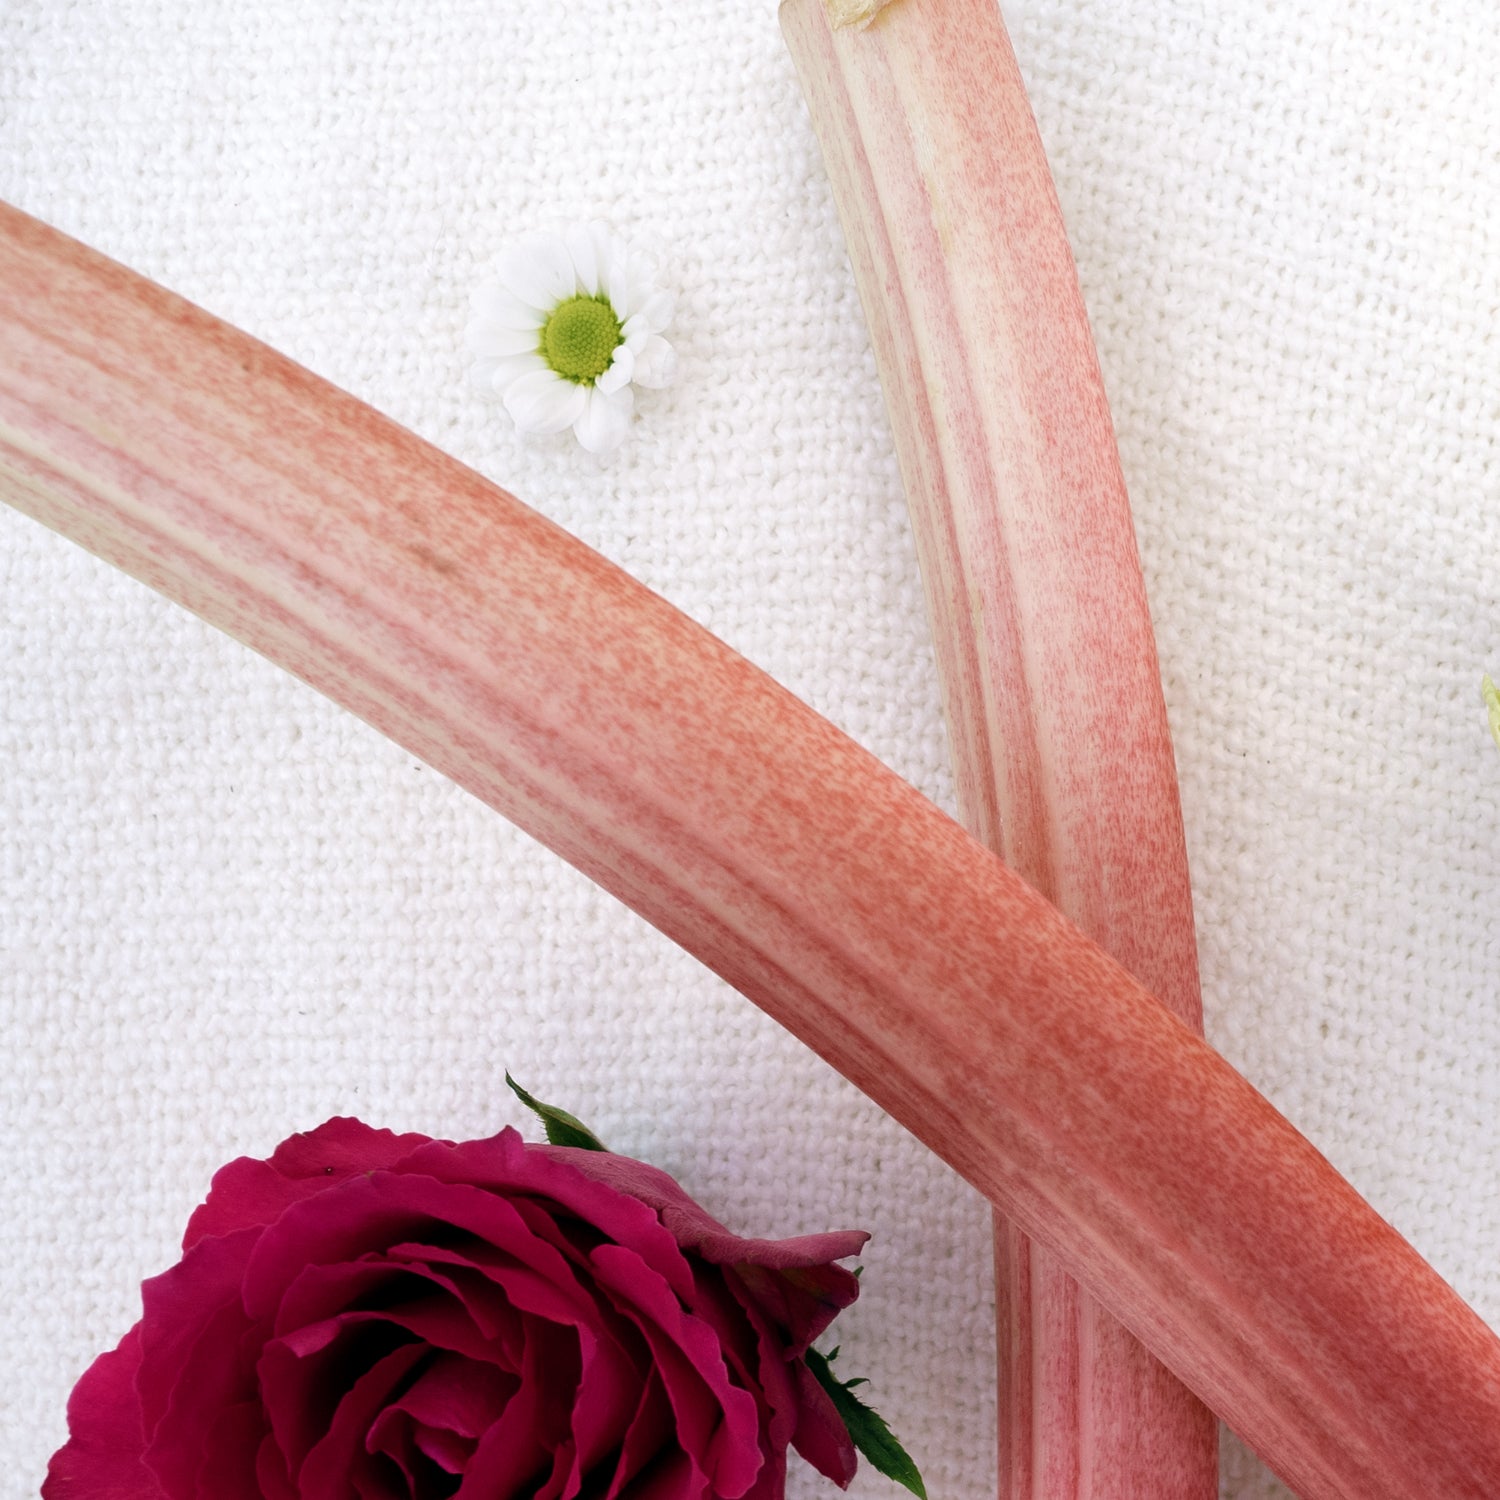 Rose & Rhubarb Reed Diffuser